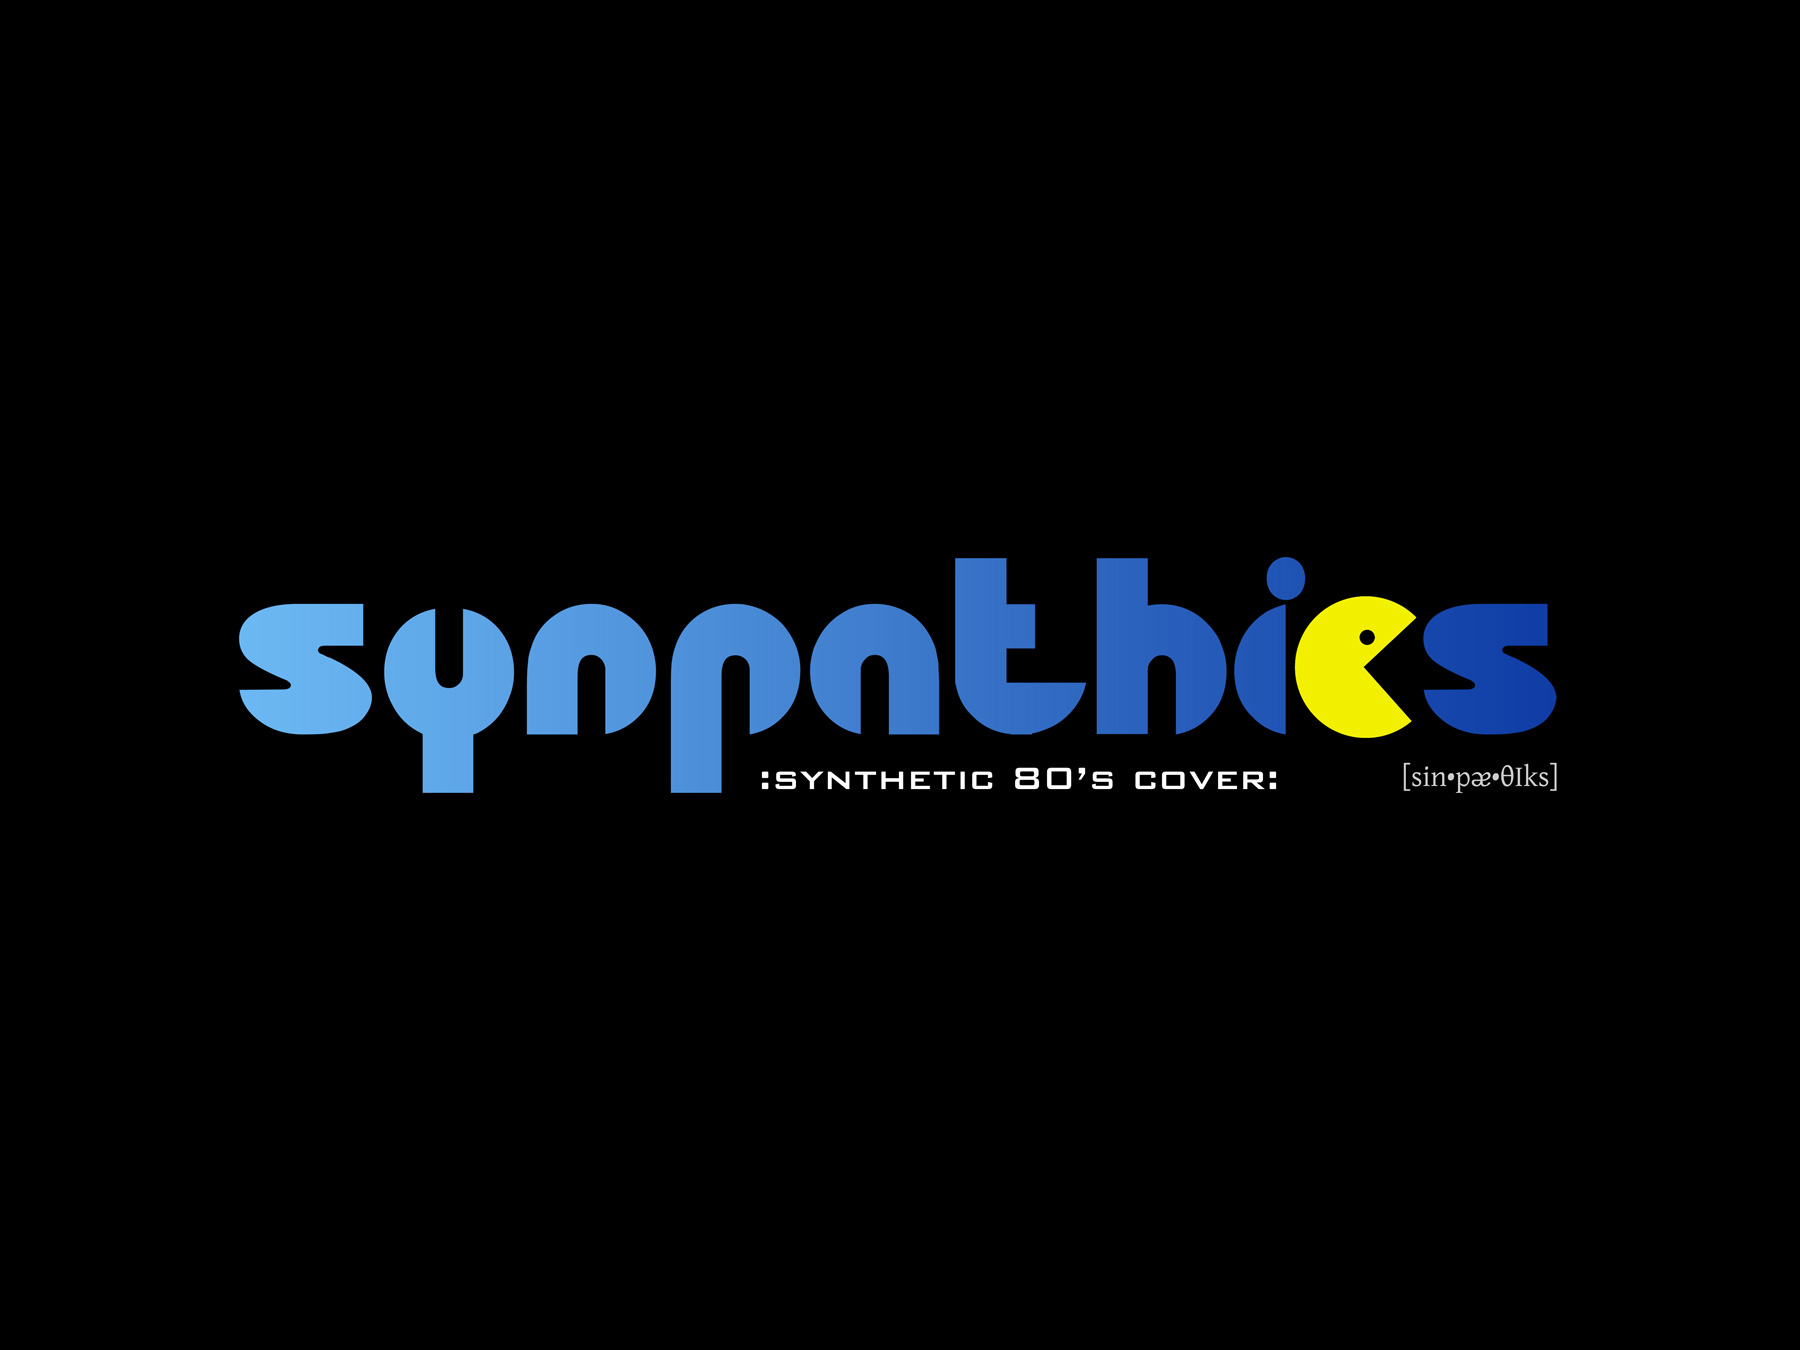 (c) Synpathics.de